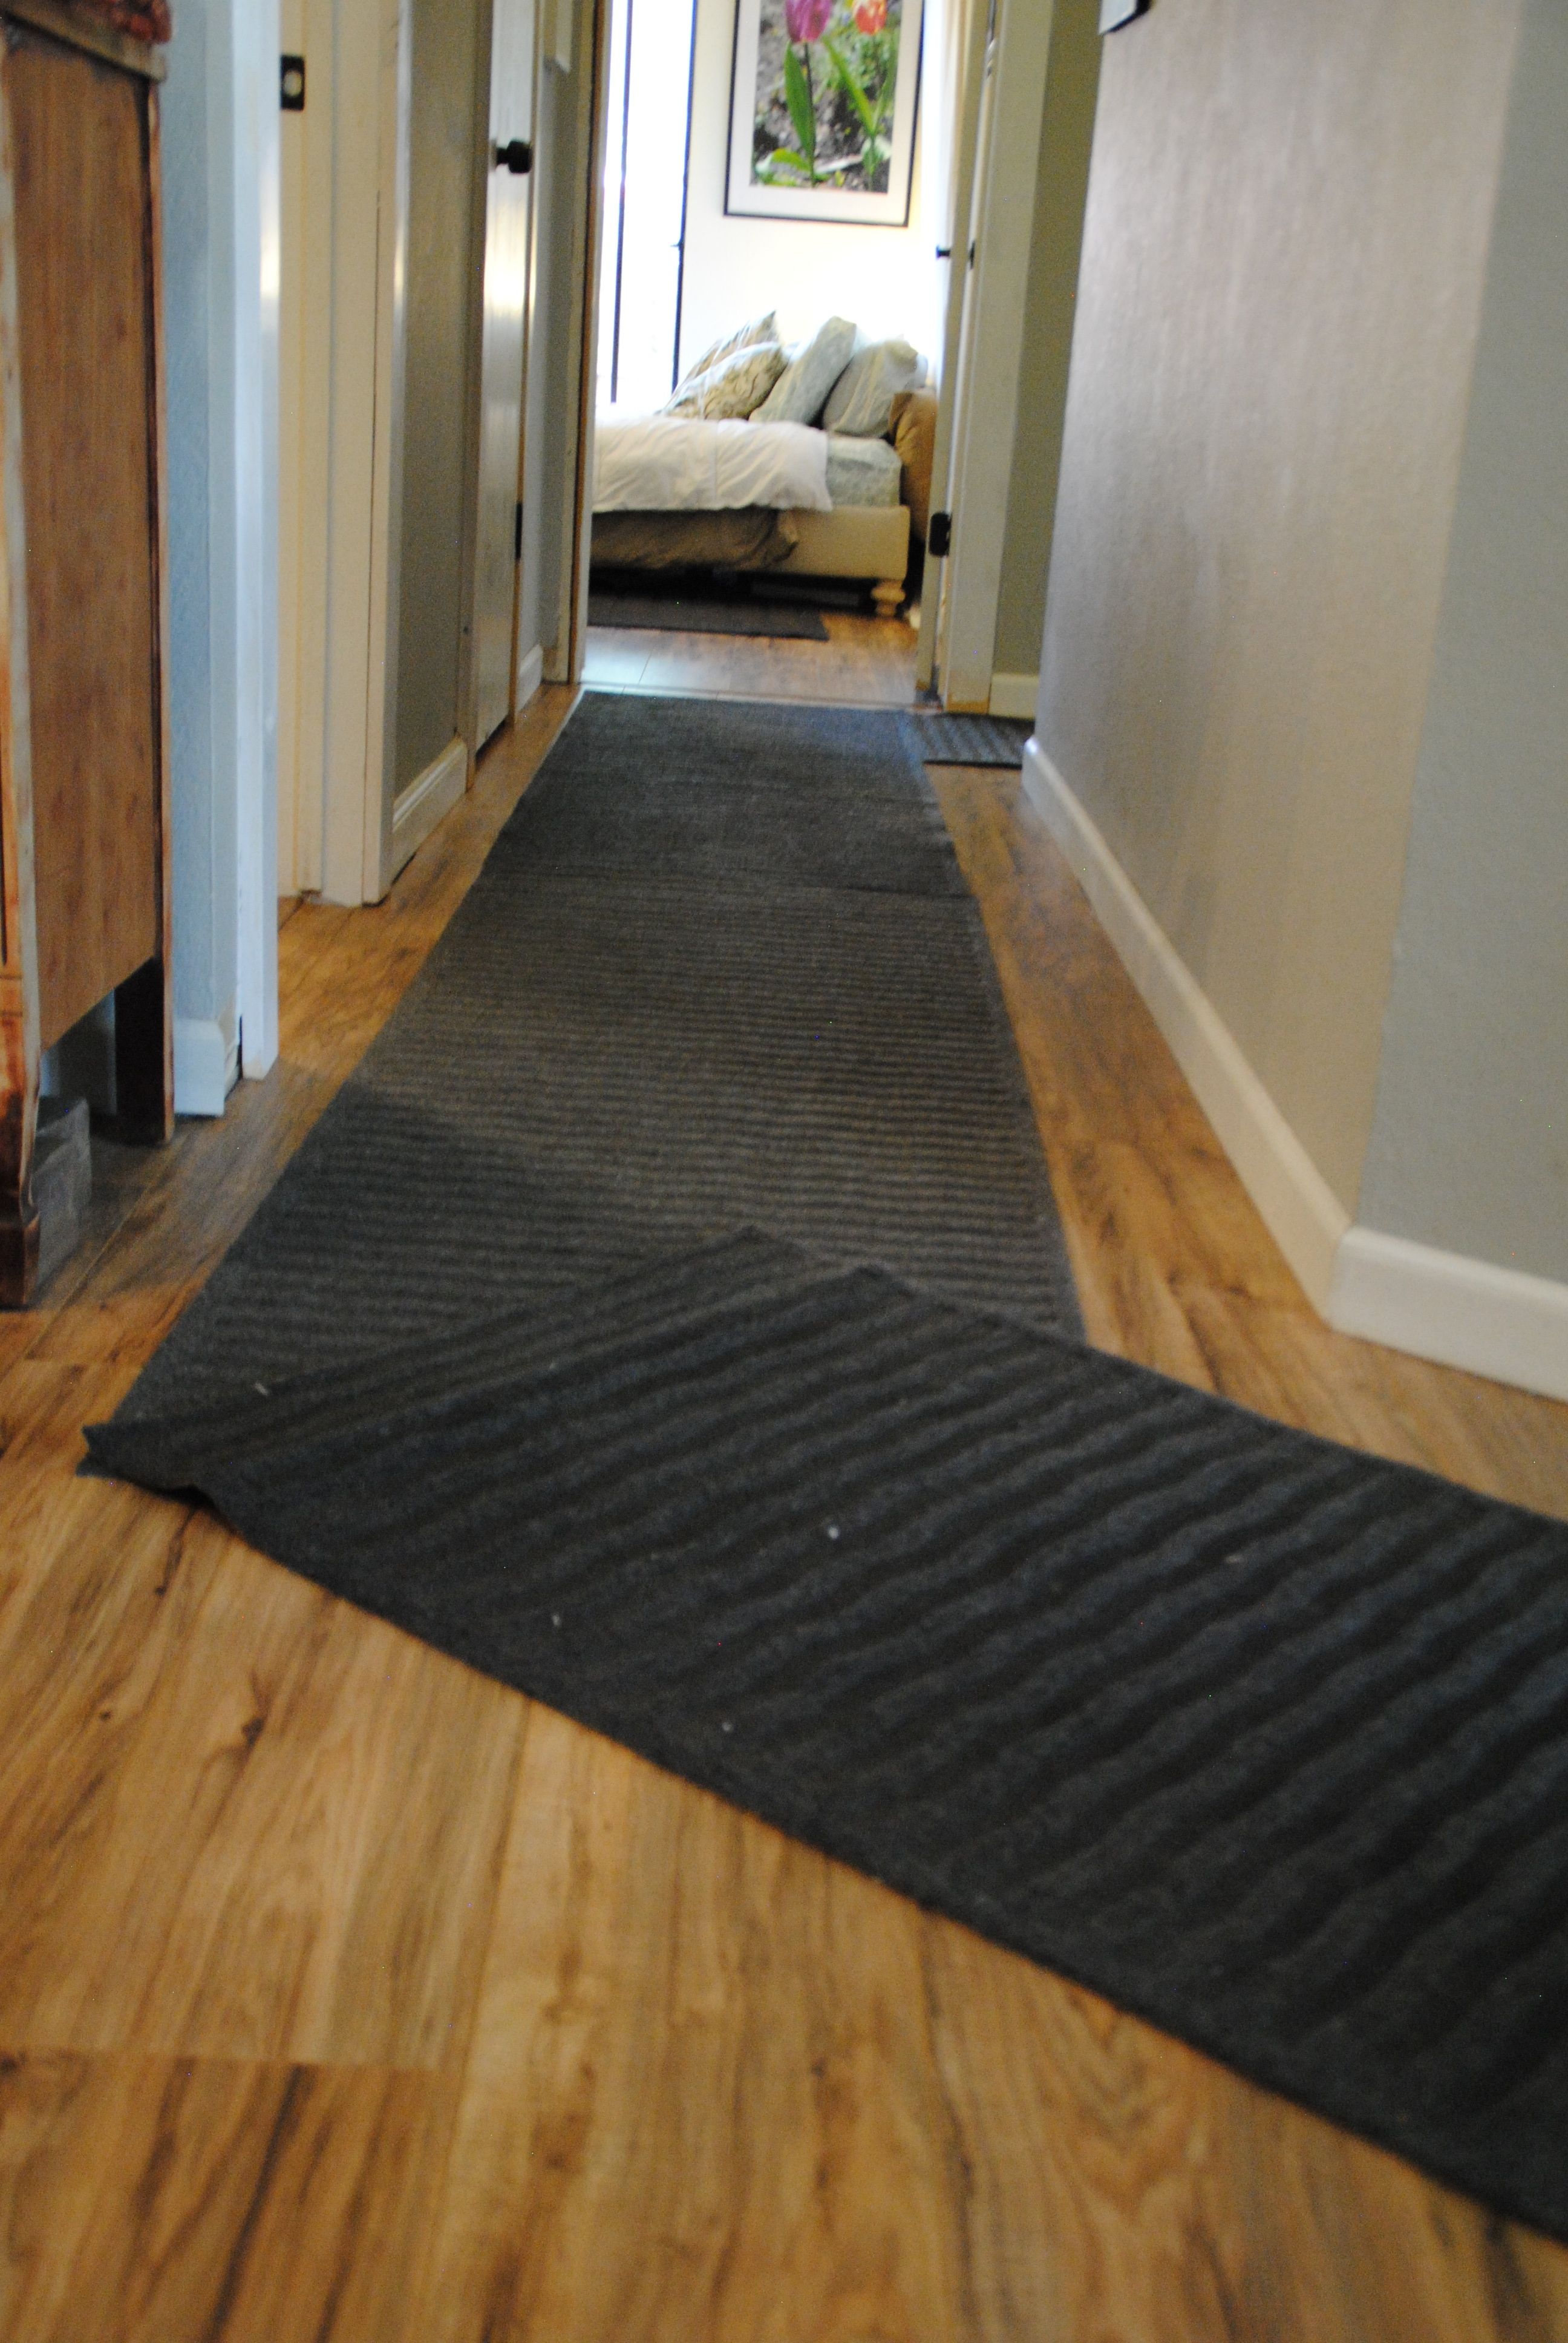 Flooring Lovely Hallway Runners For Floor Decor Idea For Hallway Runners For Dogs (Photo 1 of 20)